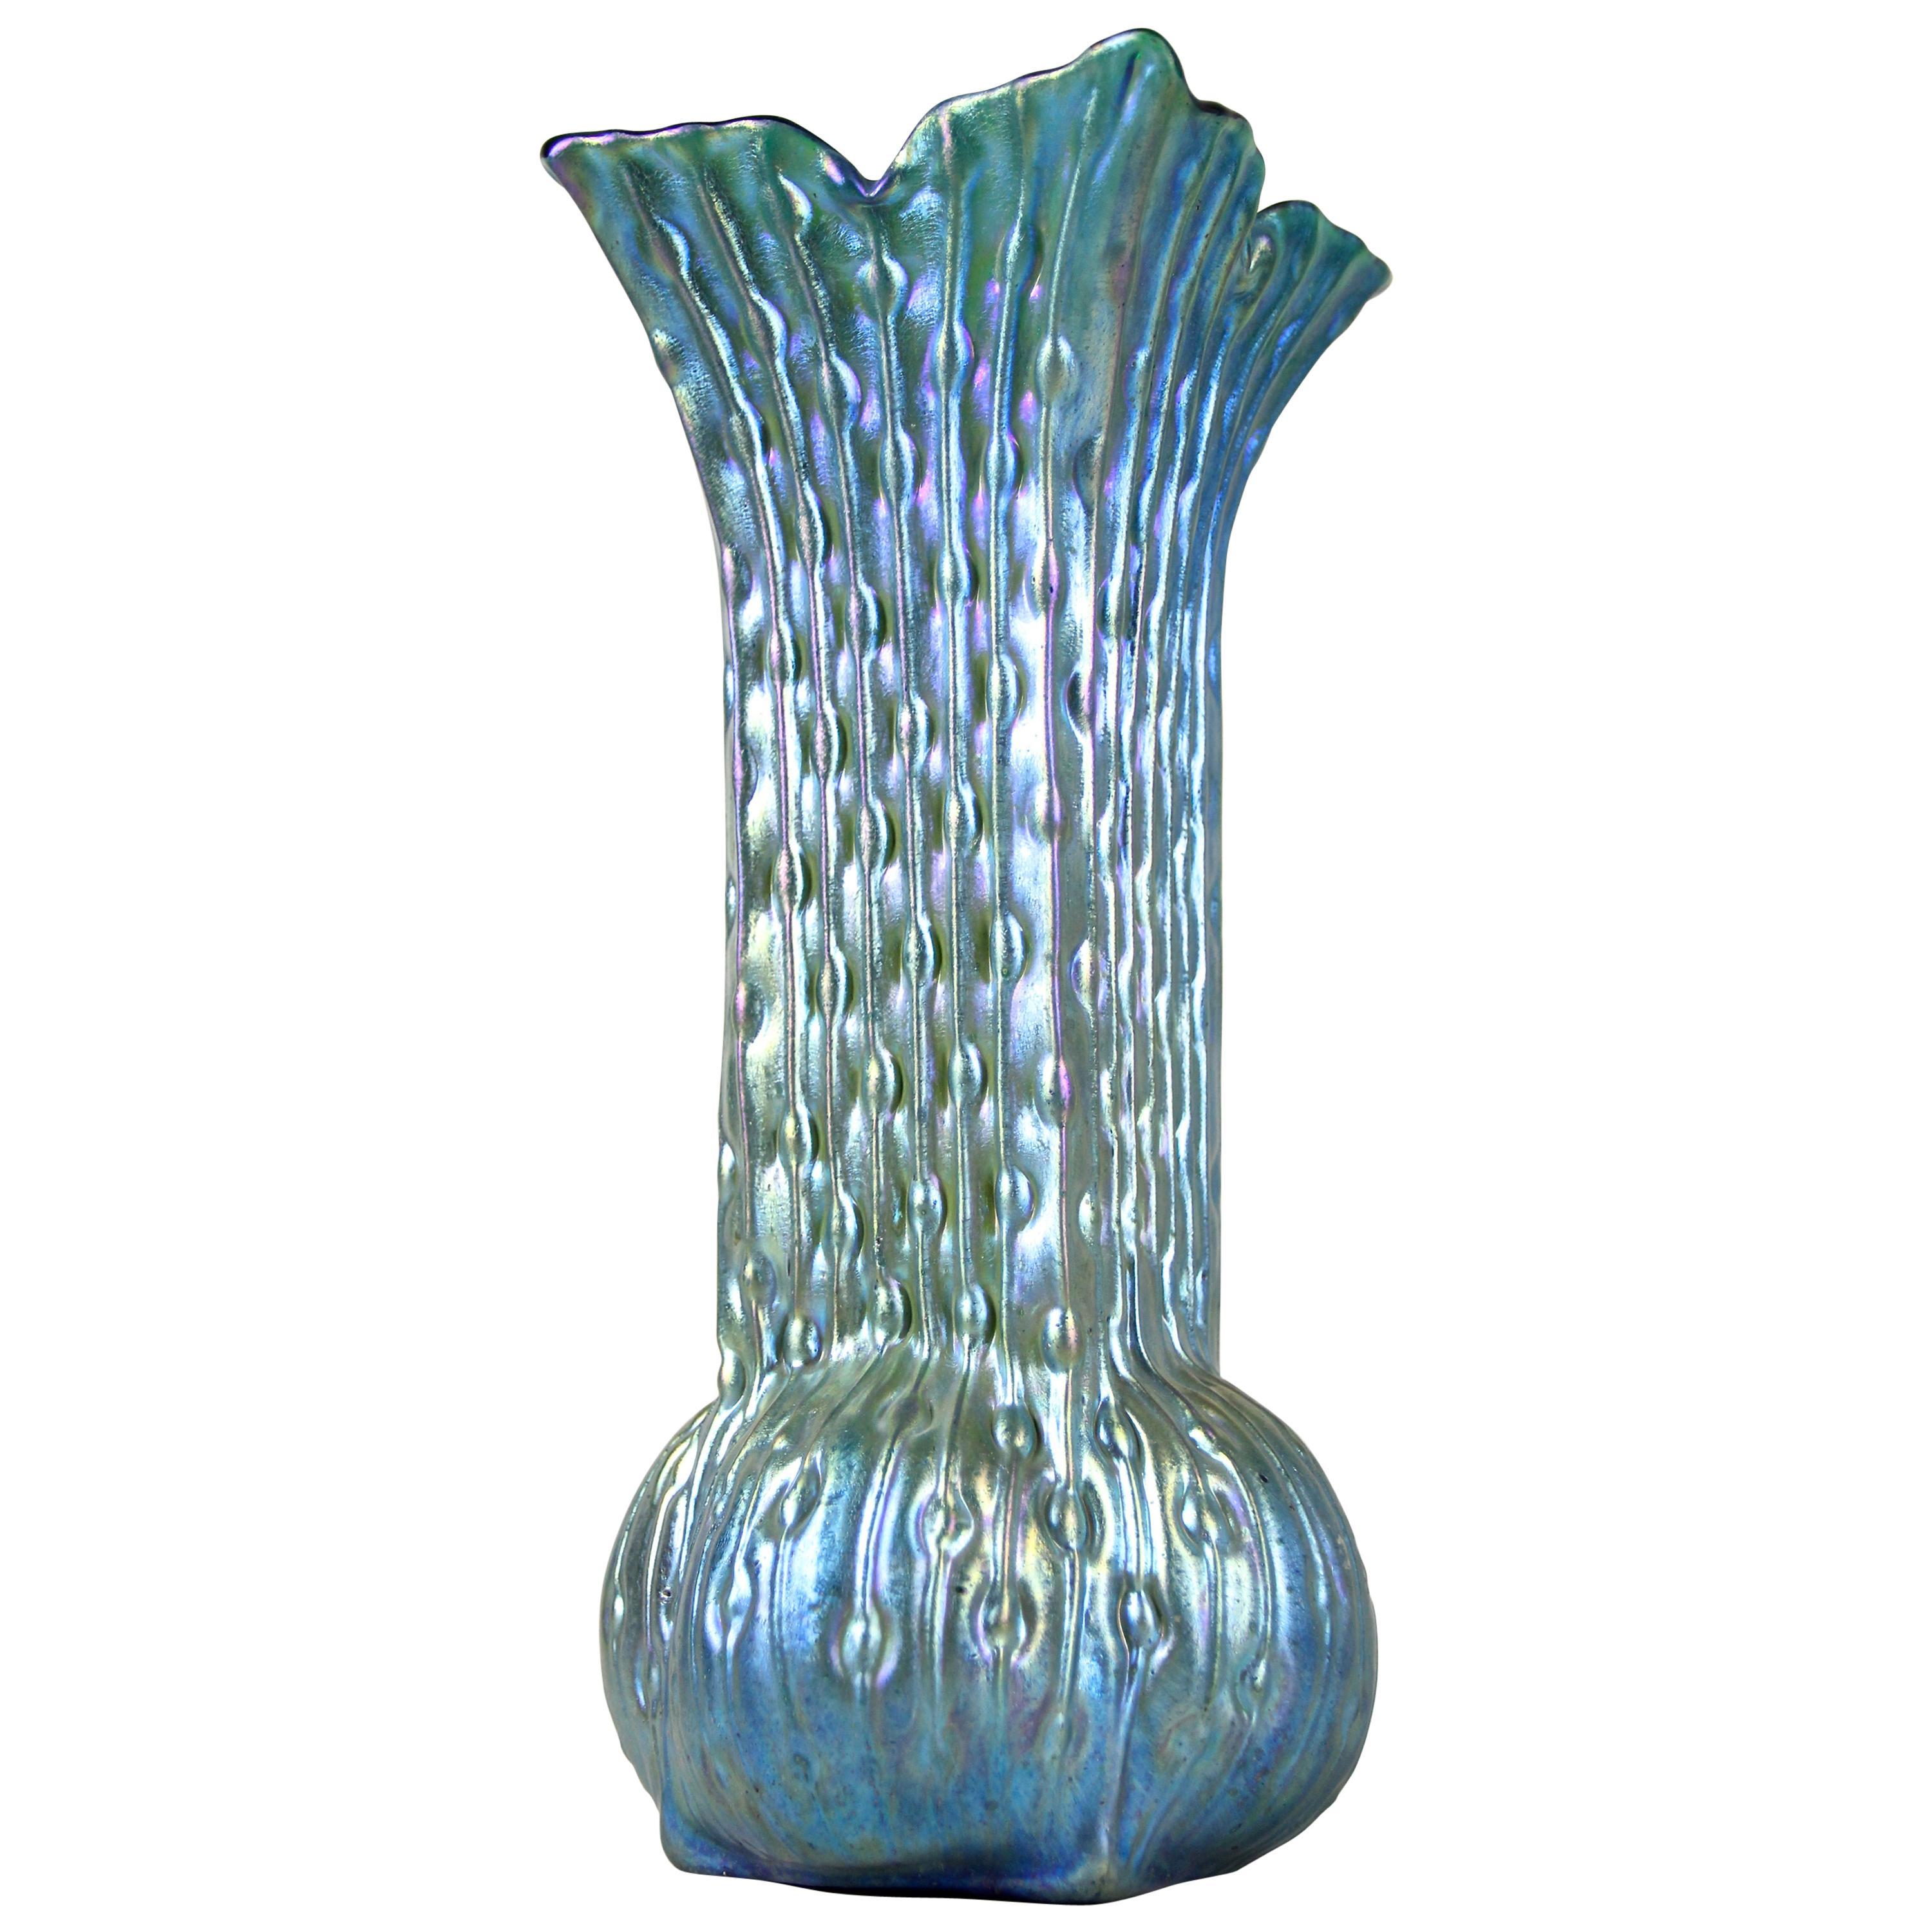 Iriscident Art Nouveau Glass Vase by Loetz Witwe, Bohemia, circa 1902